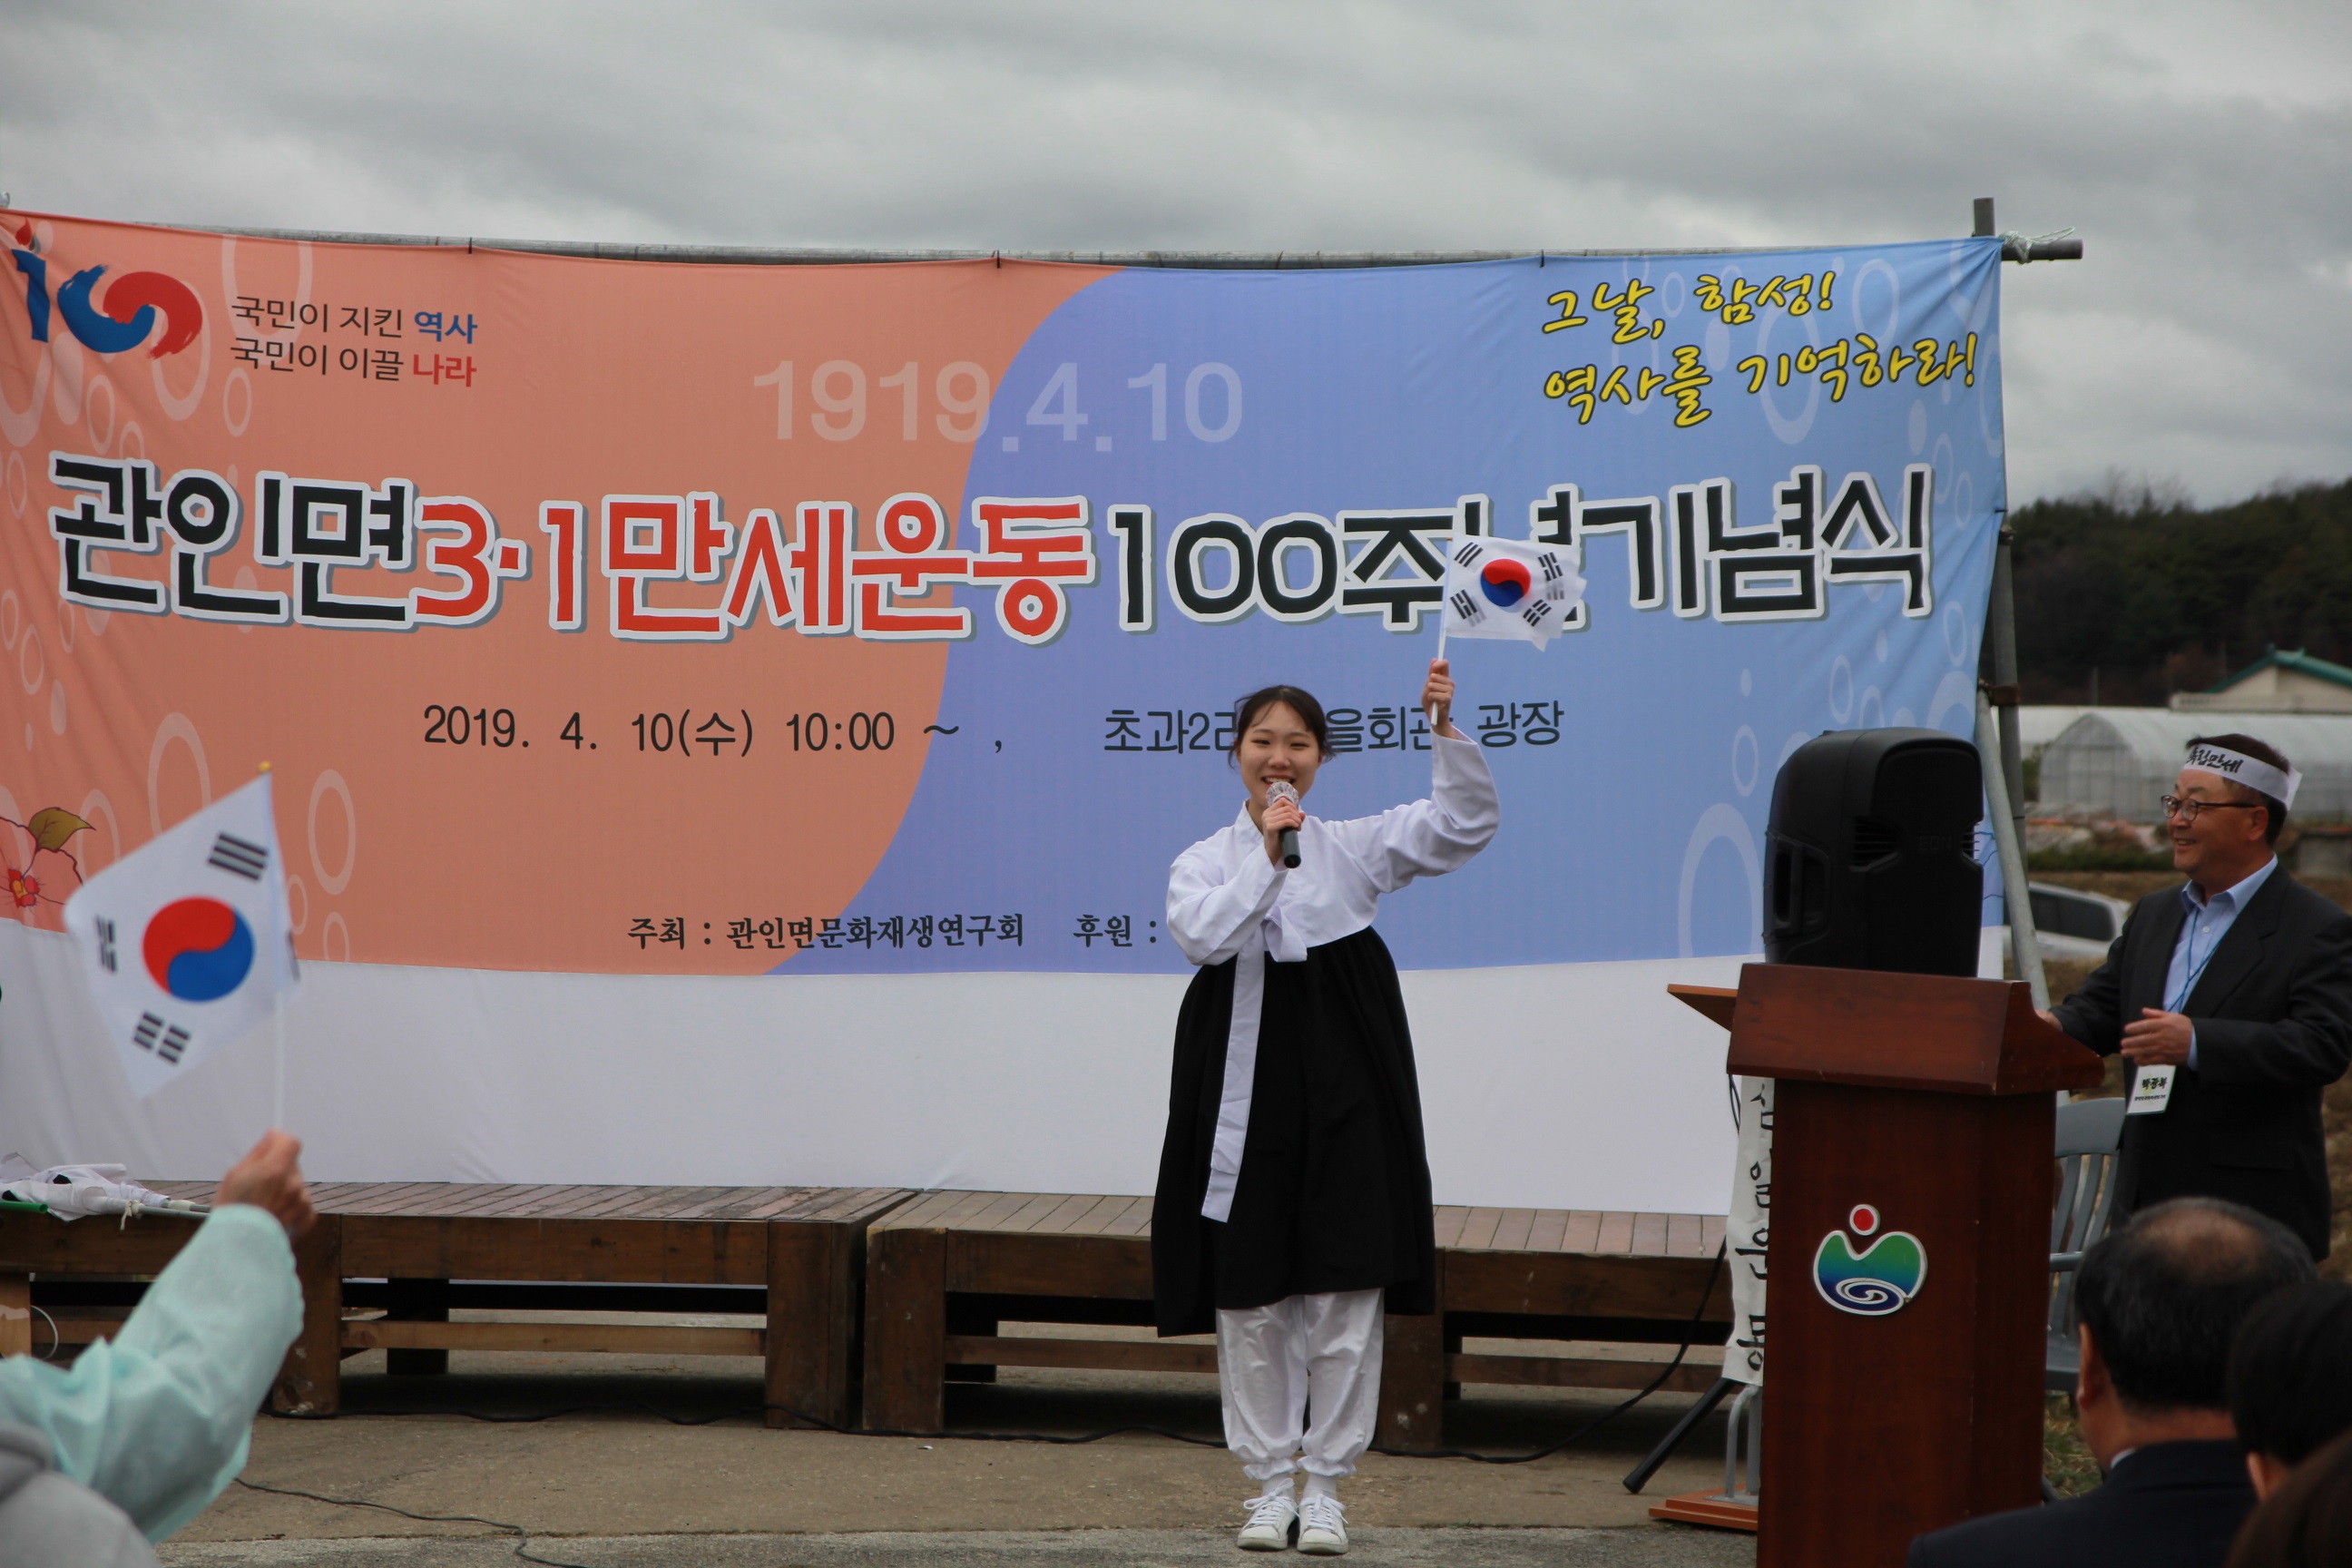 [일반] [4/10] 민관군 평화기원 3.1만세 운동 100주년 기념 행사의 첨부이미지 2